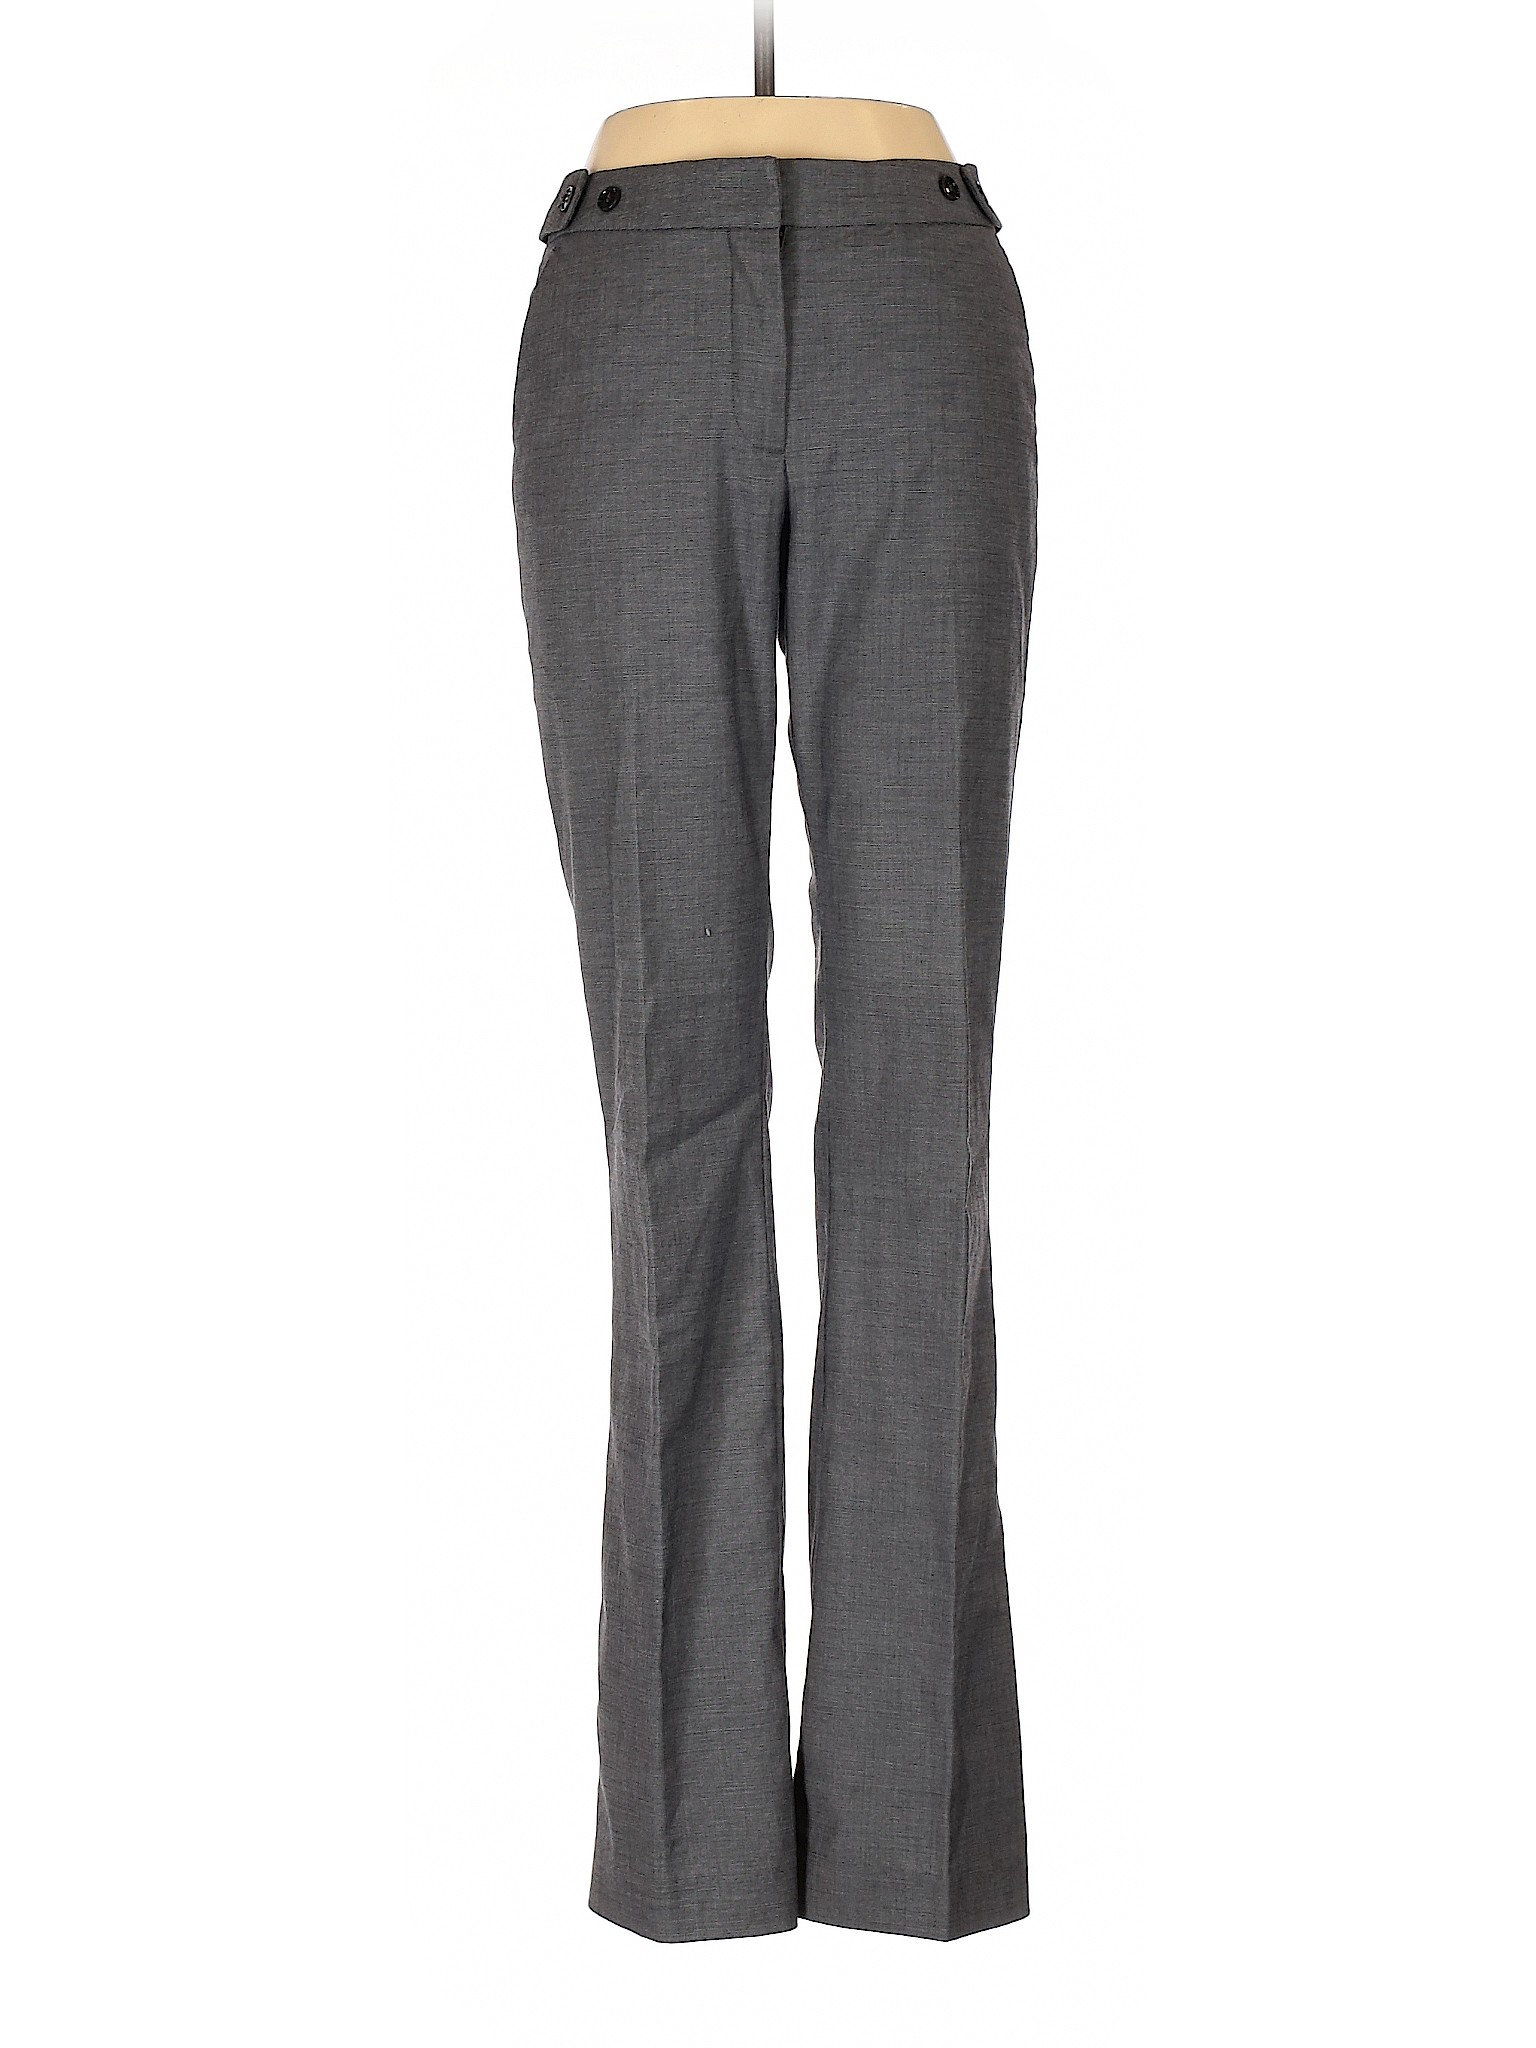 H&M Women Gray Dress Pants 4 | eBay